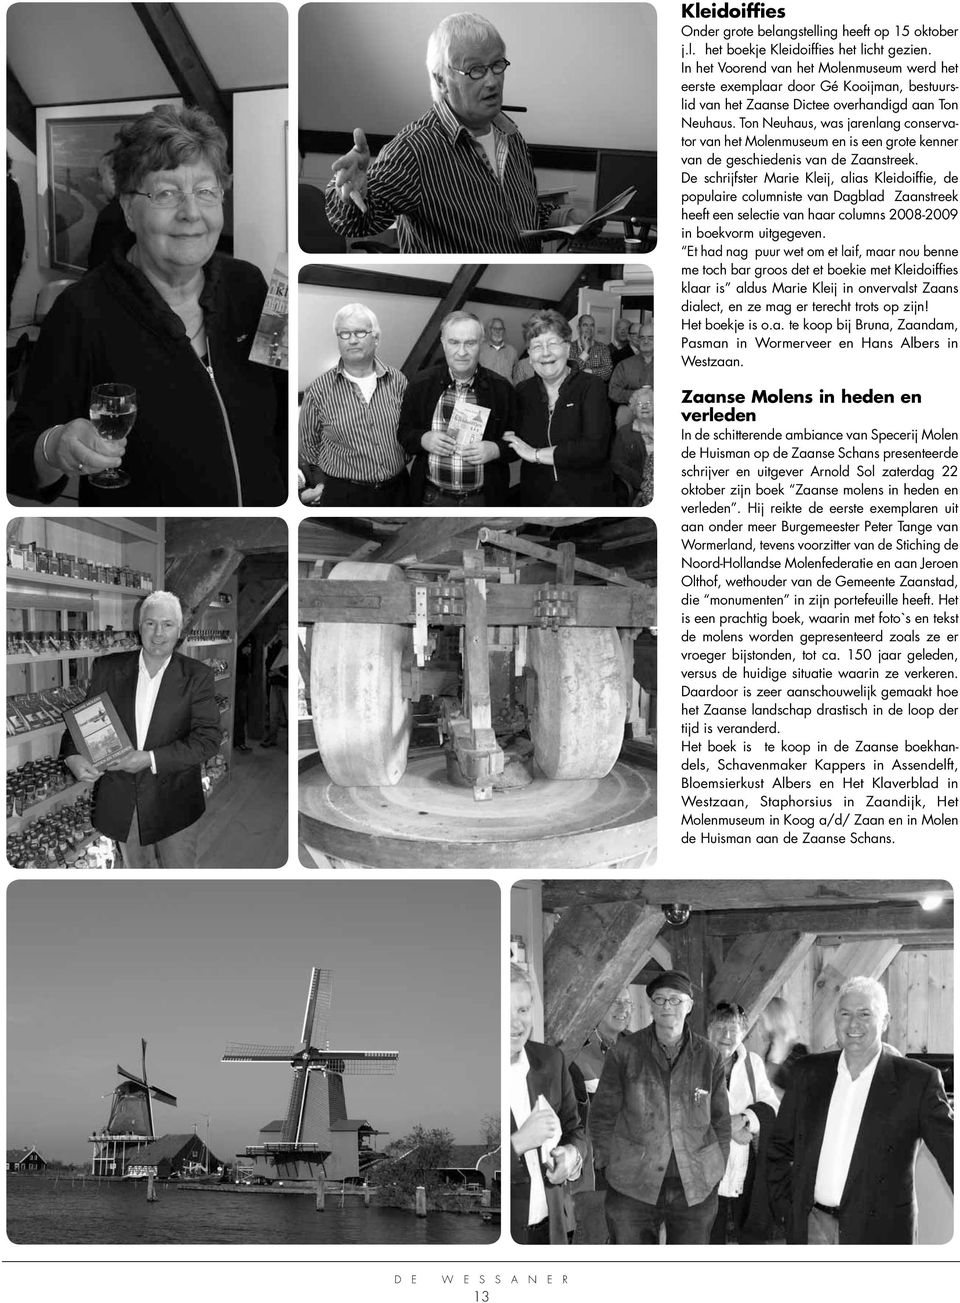 Ton Neuhaus, was jarenlang conservator van het Molenmuseum en is een grote kenner van de geschiedenis van de Zaanstreek.